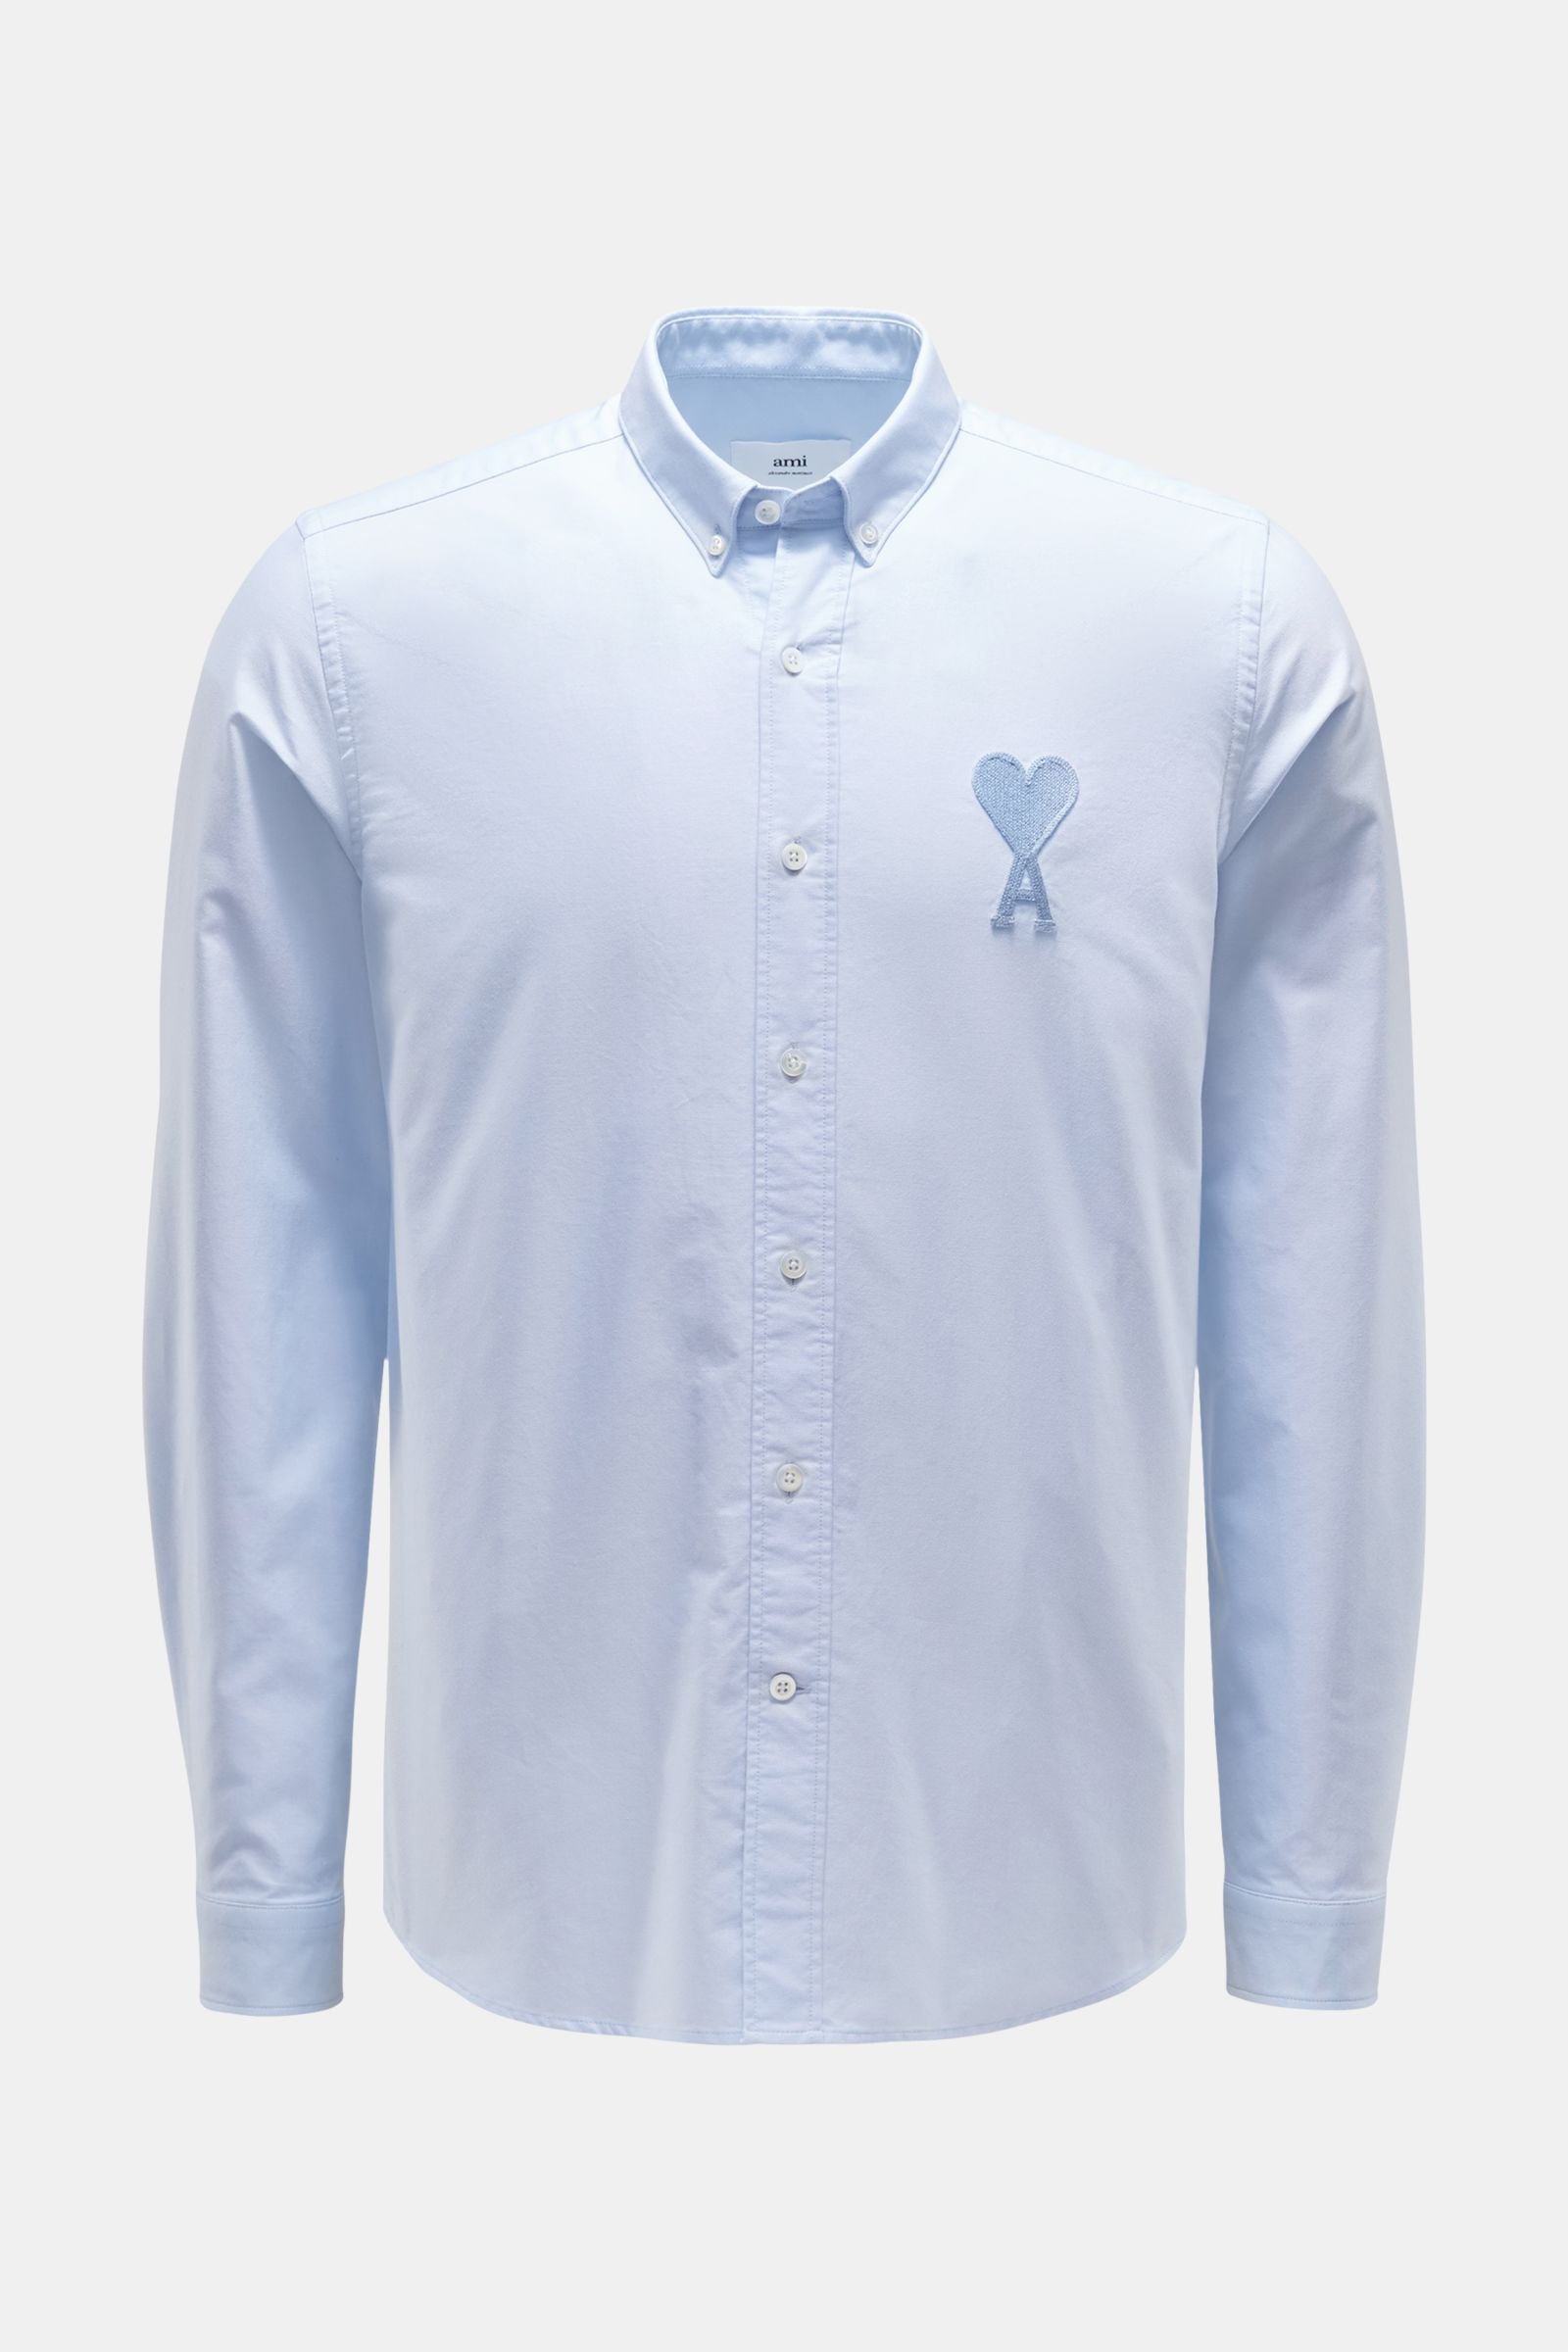 Oxfordhemd Button-Down-Kragen hellblau